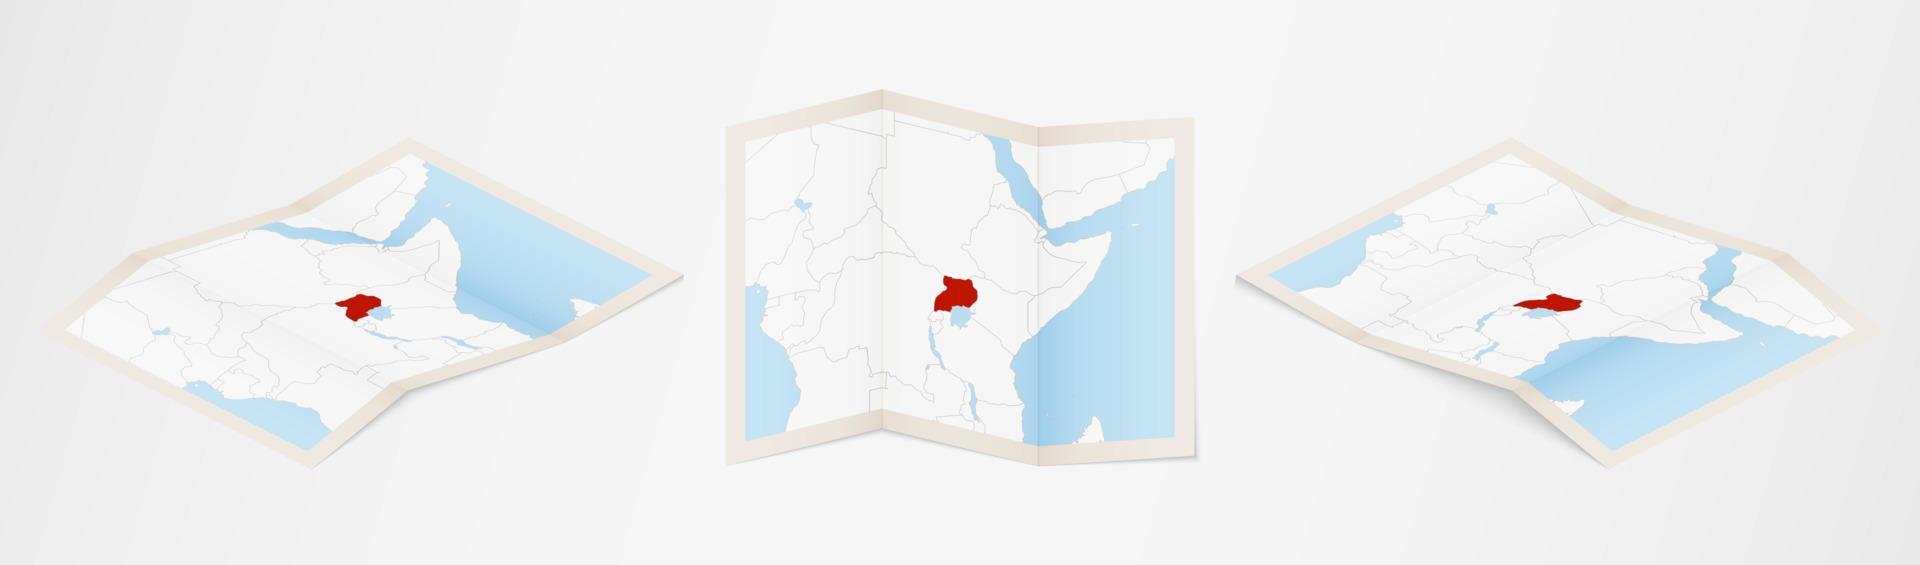 gevouwen kaart van Oeganda in drie verschillend versies. vector